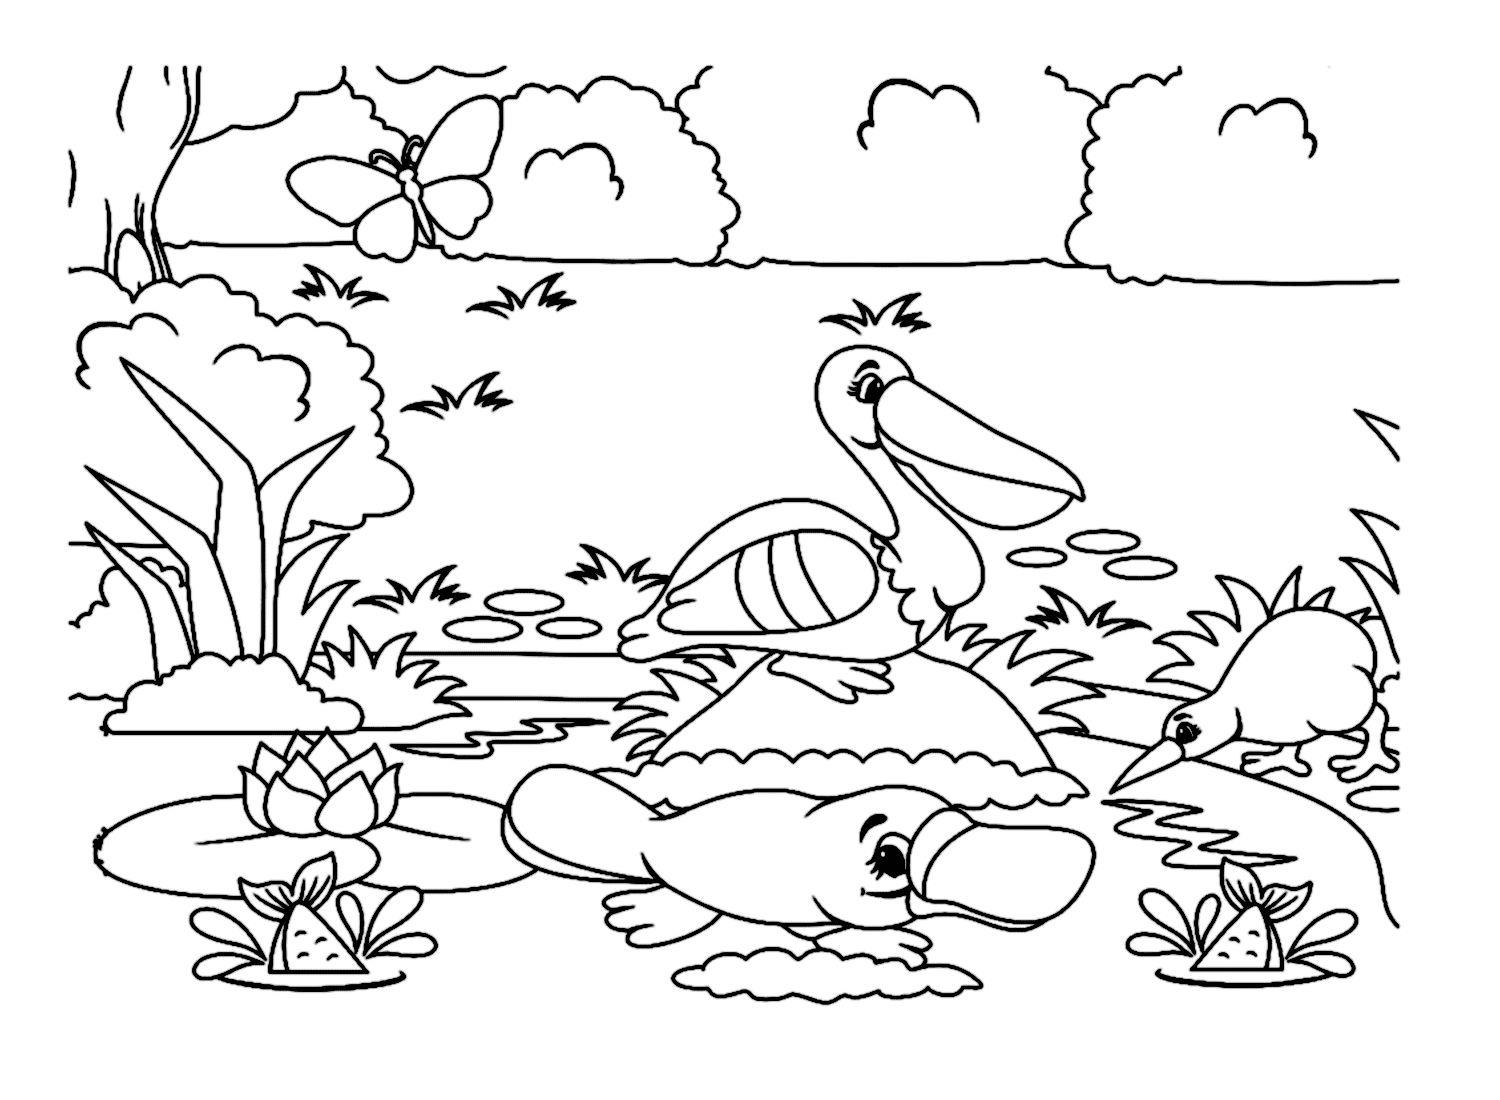 Schnabeltier am Flussufer mit anderen Tieren von Platypus